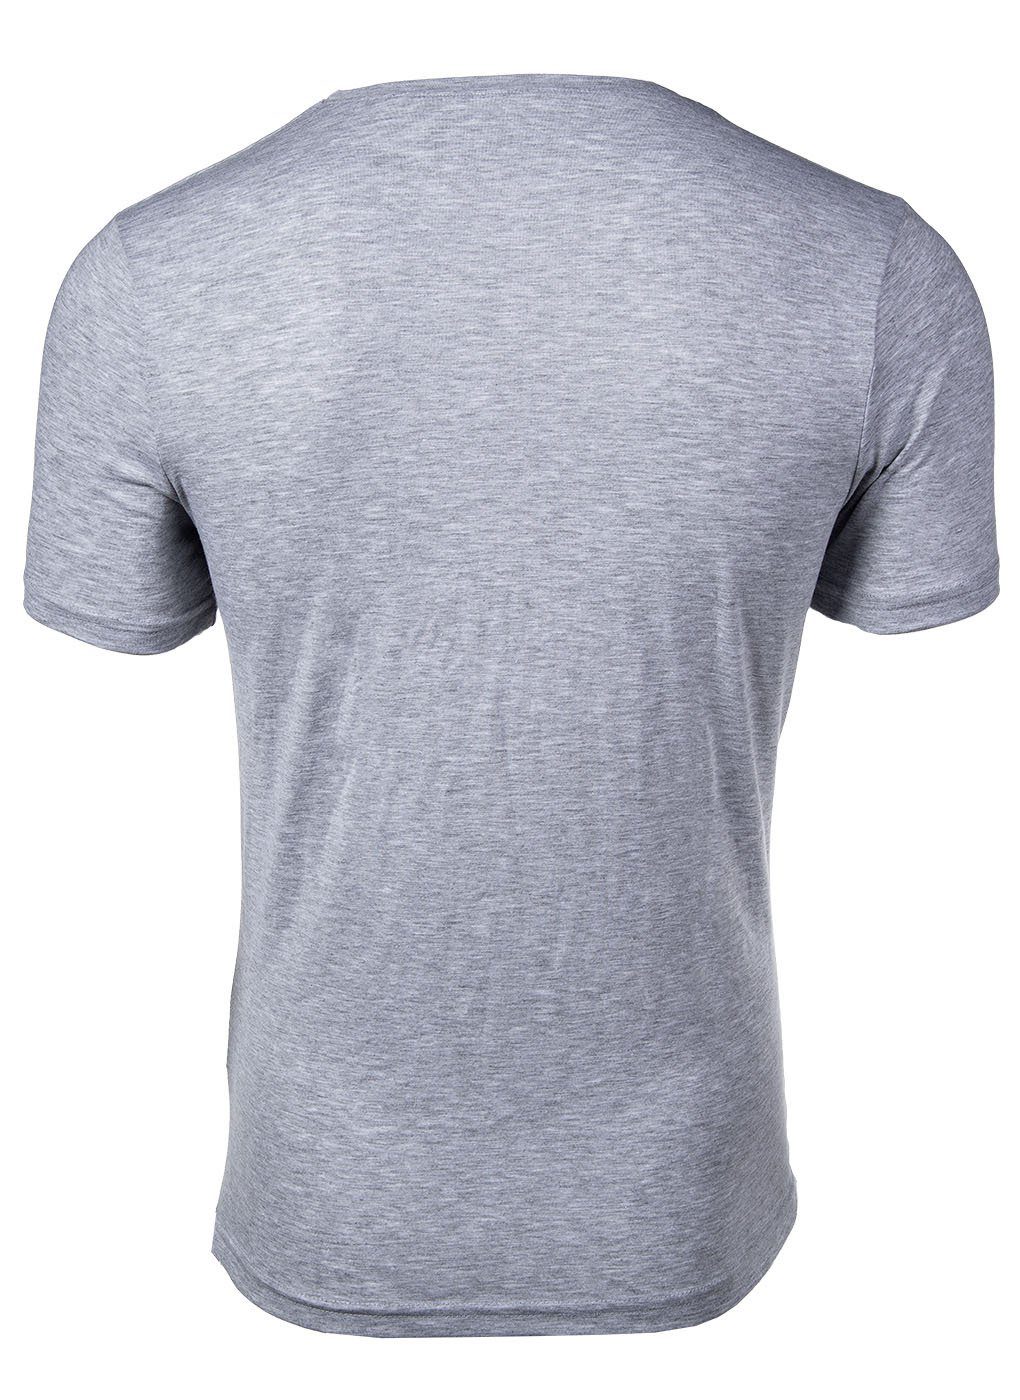 Grau Rundhals, Fila Herren Unterhemd Jersey Single - Unterhemd